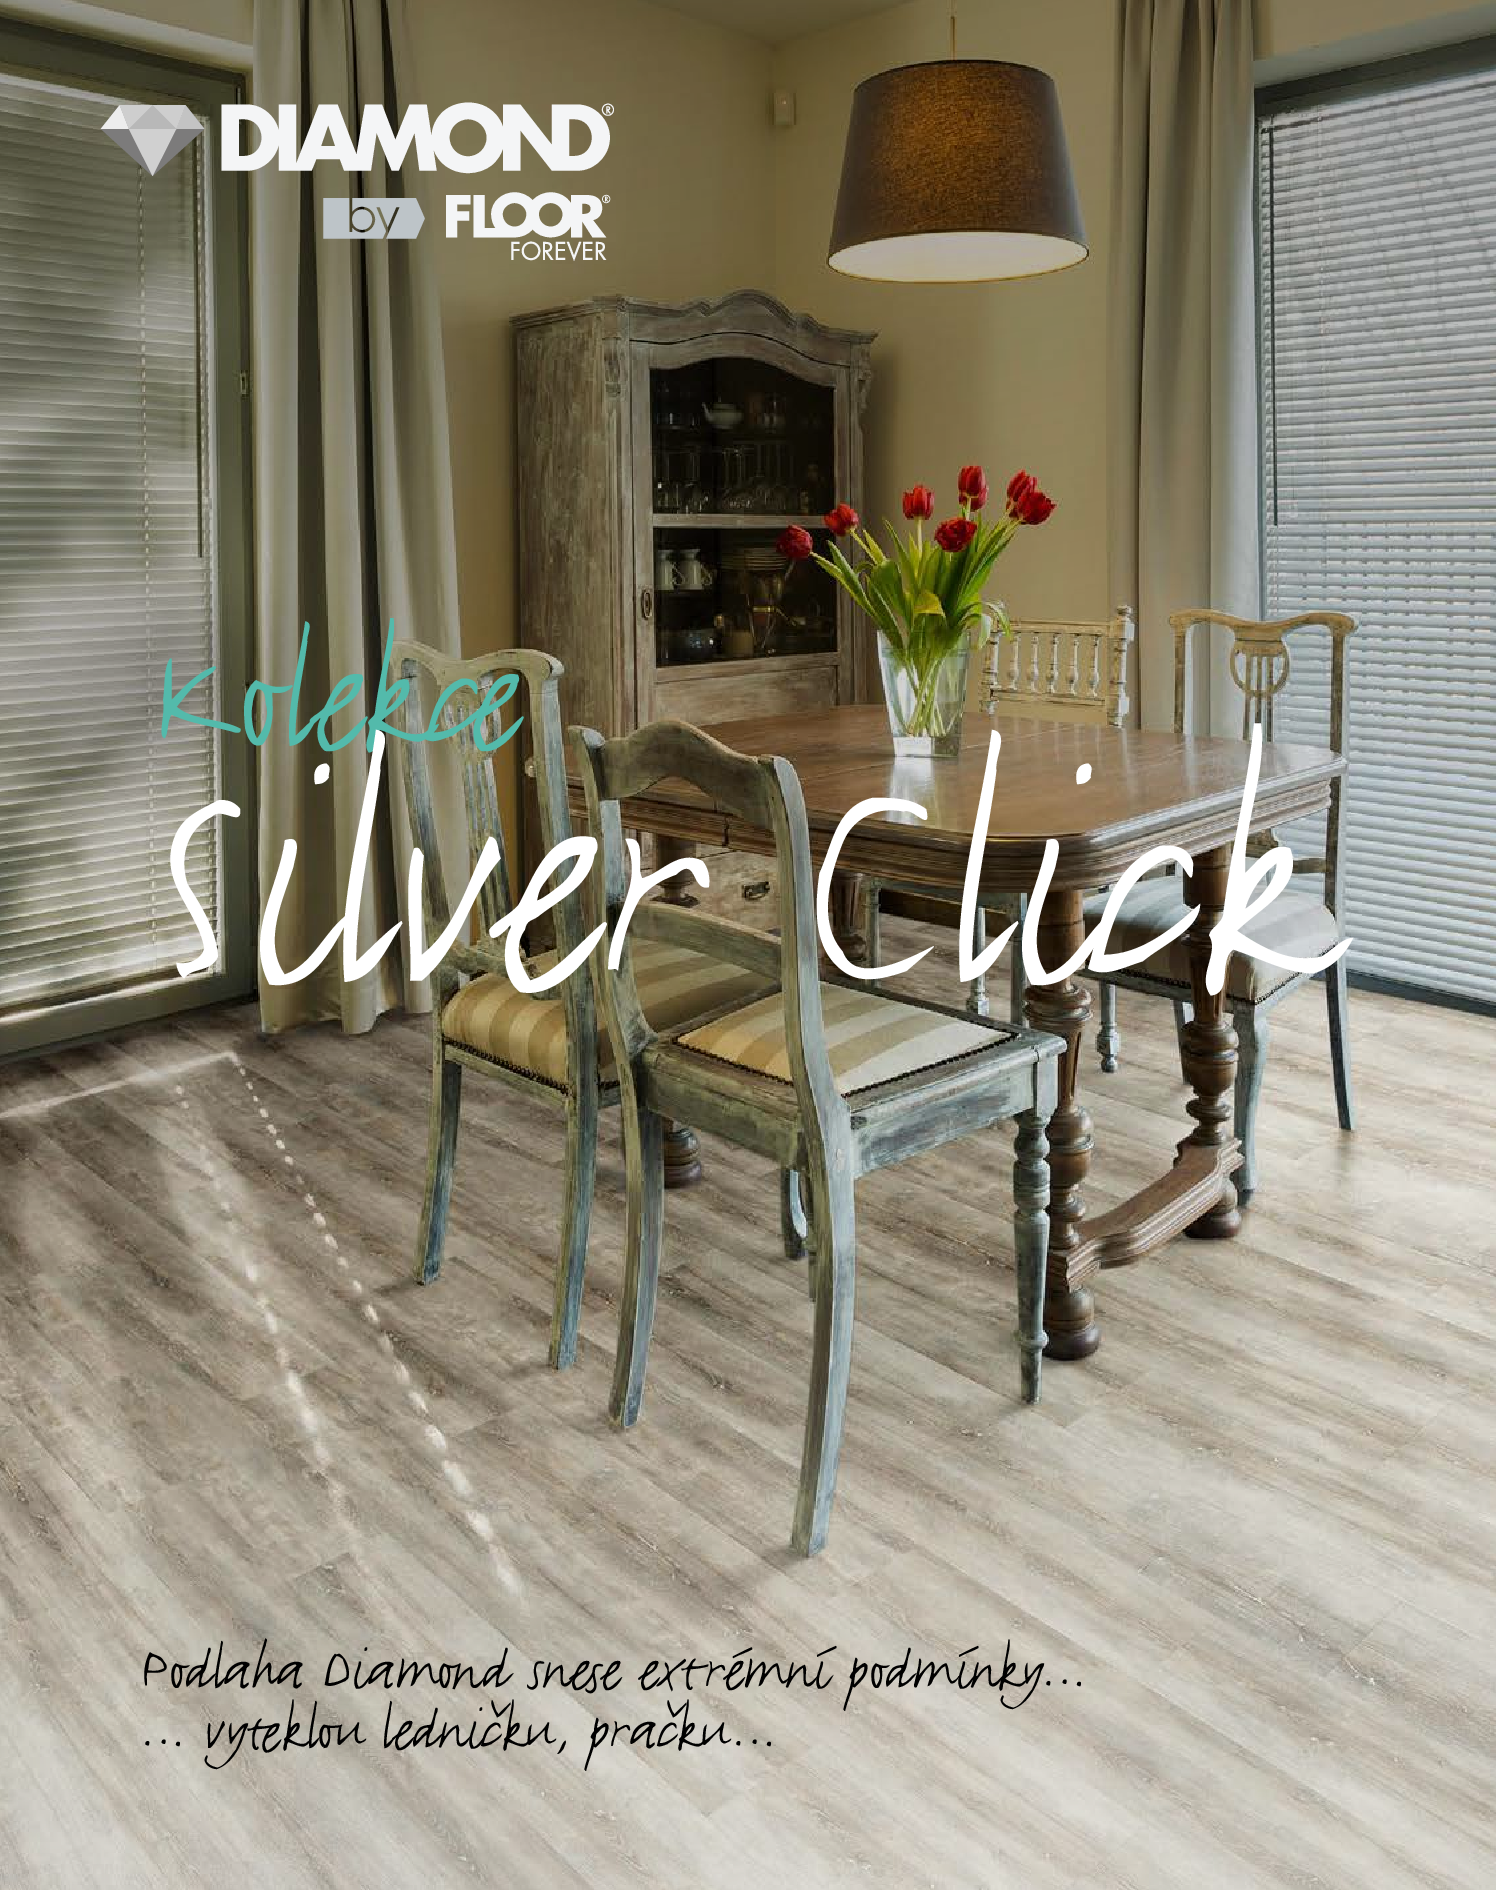 Silver click